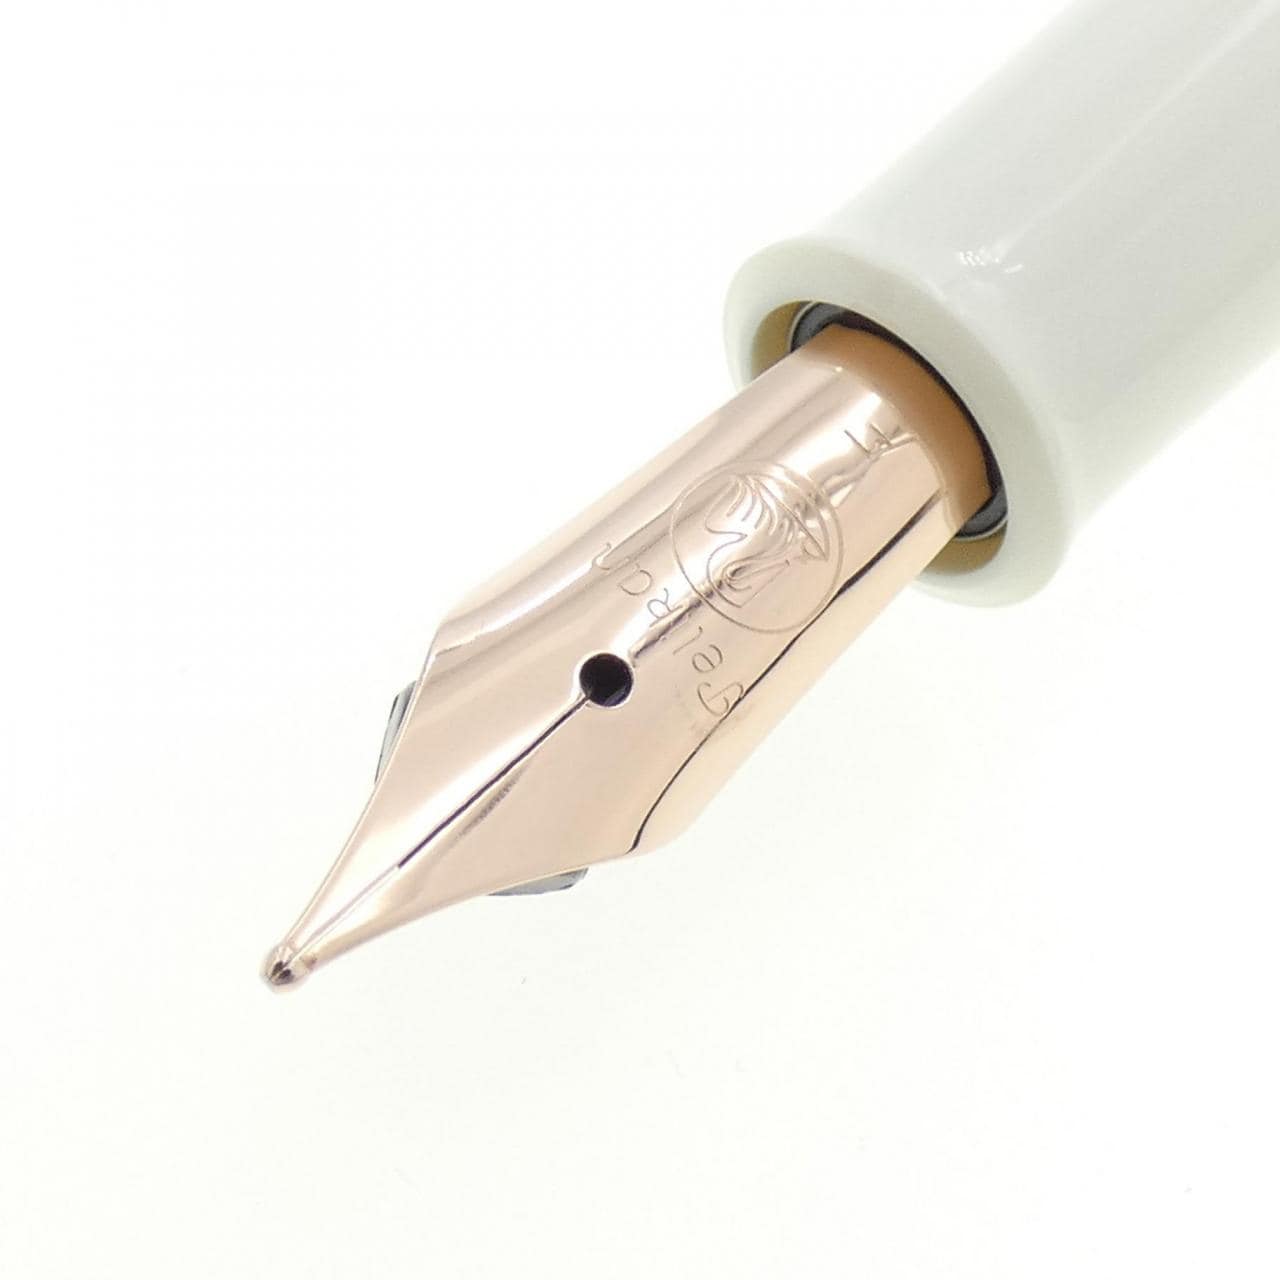 [新品] 百利金经典 M200 铜钢笔